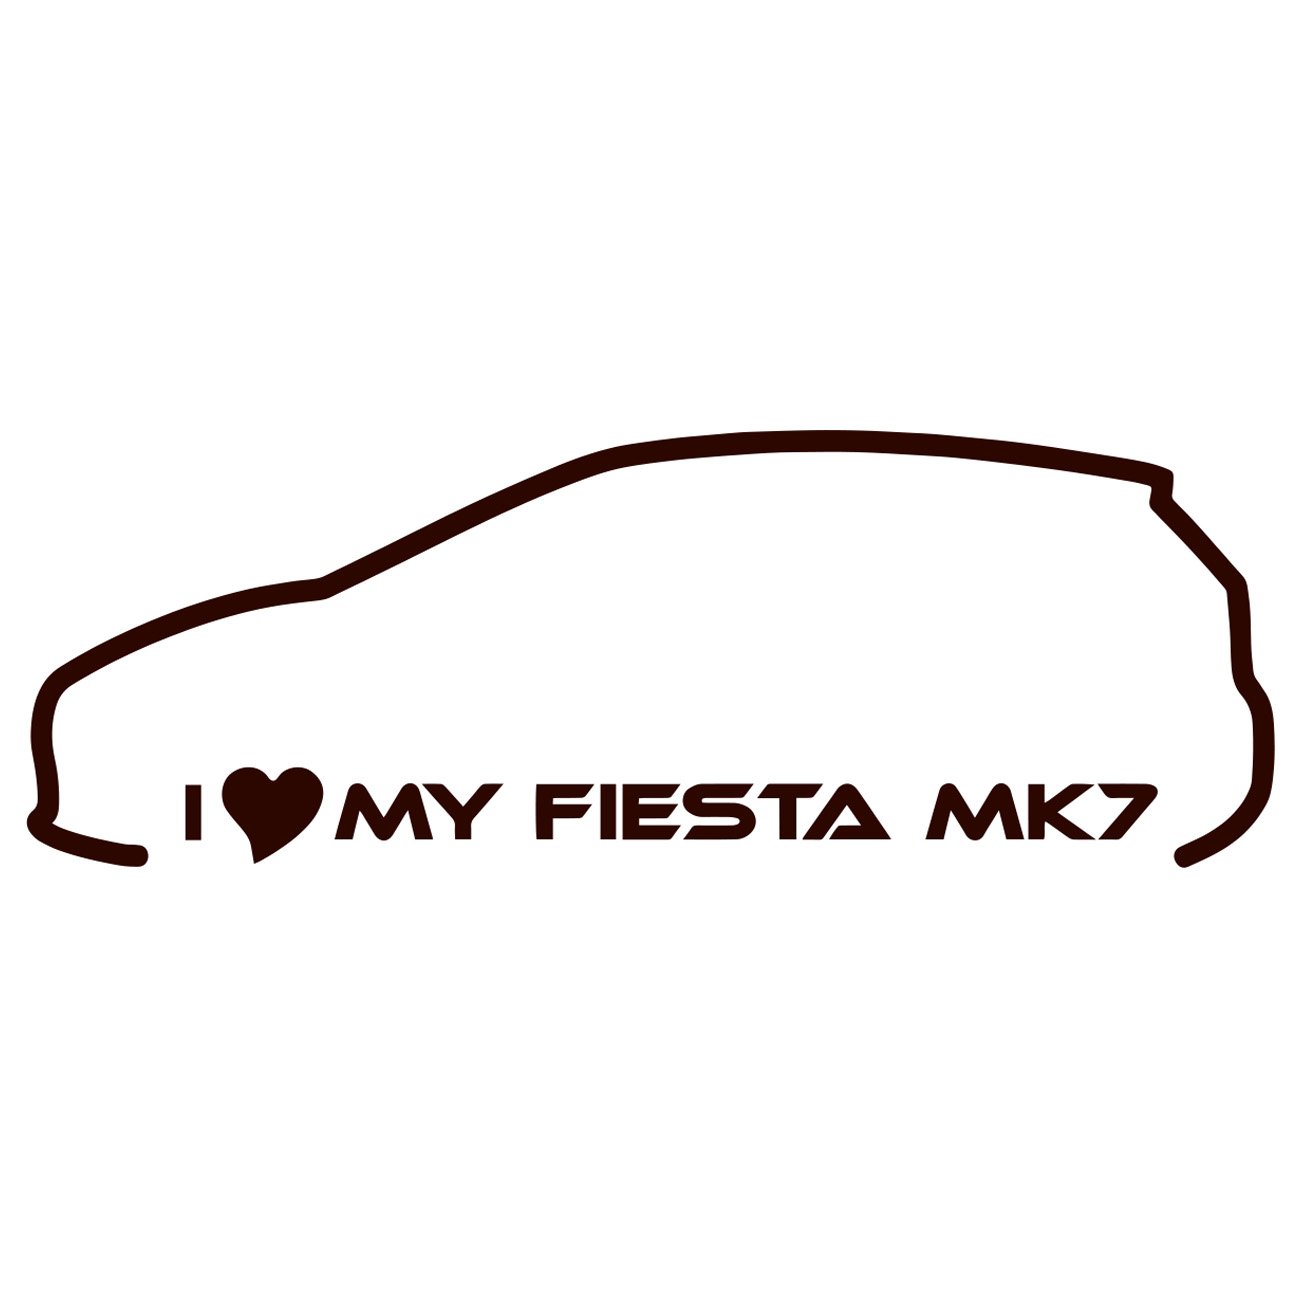 I love my Fiesta MK7 - Ford